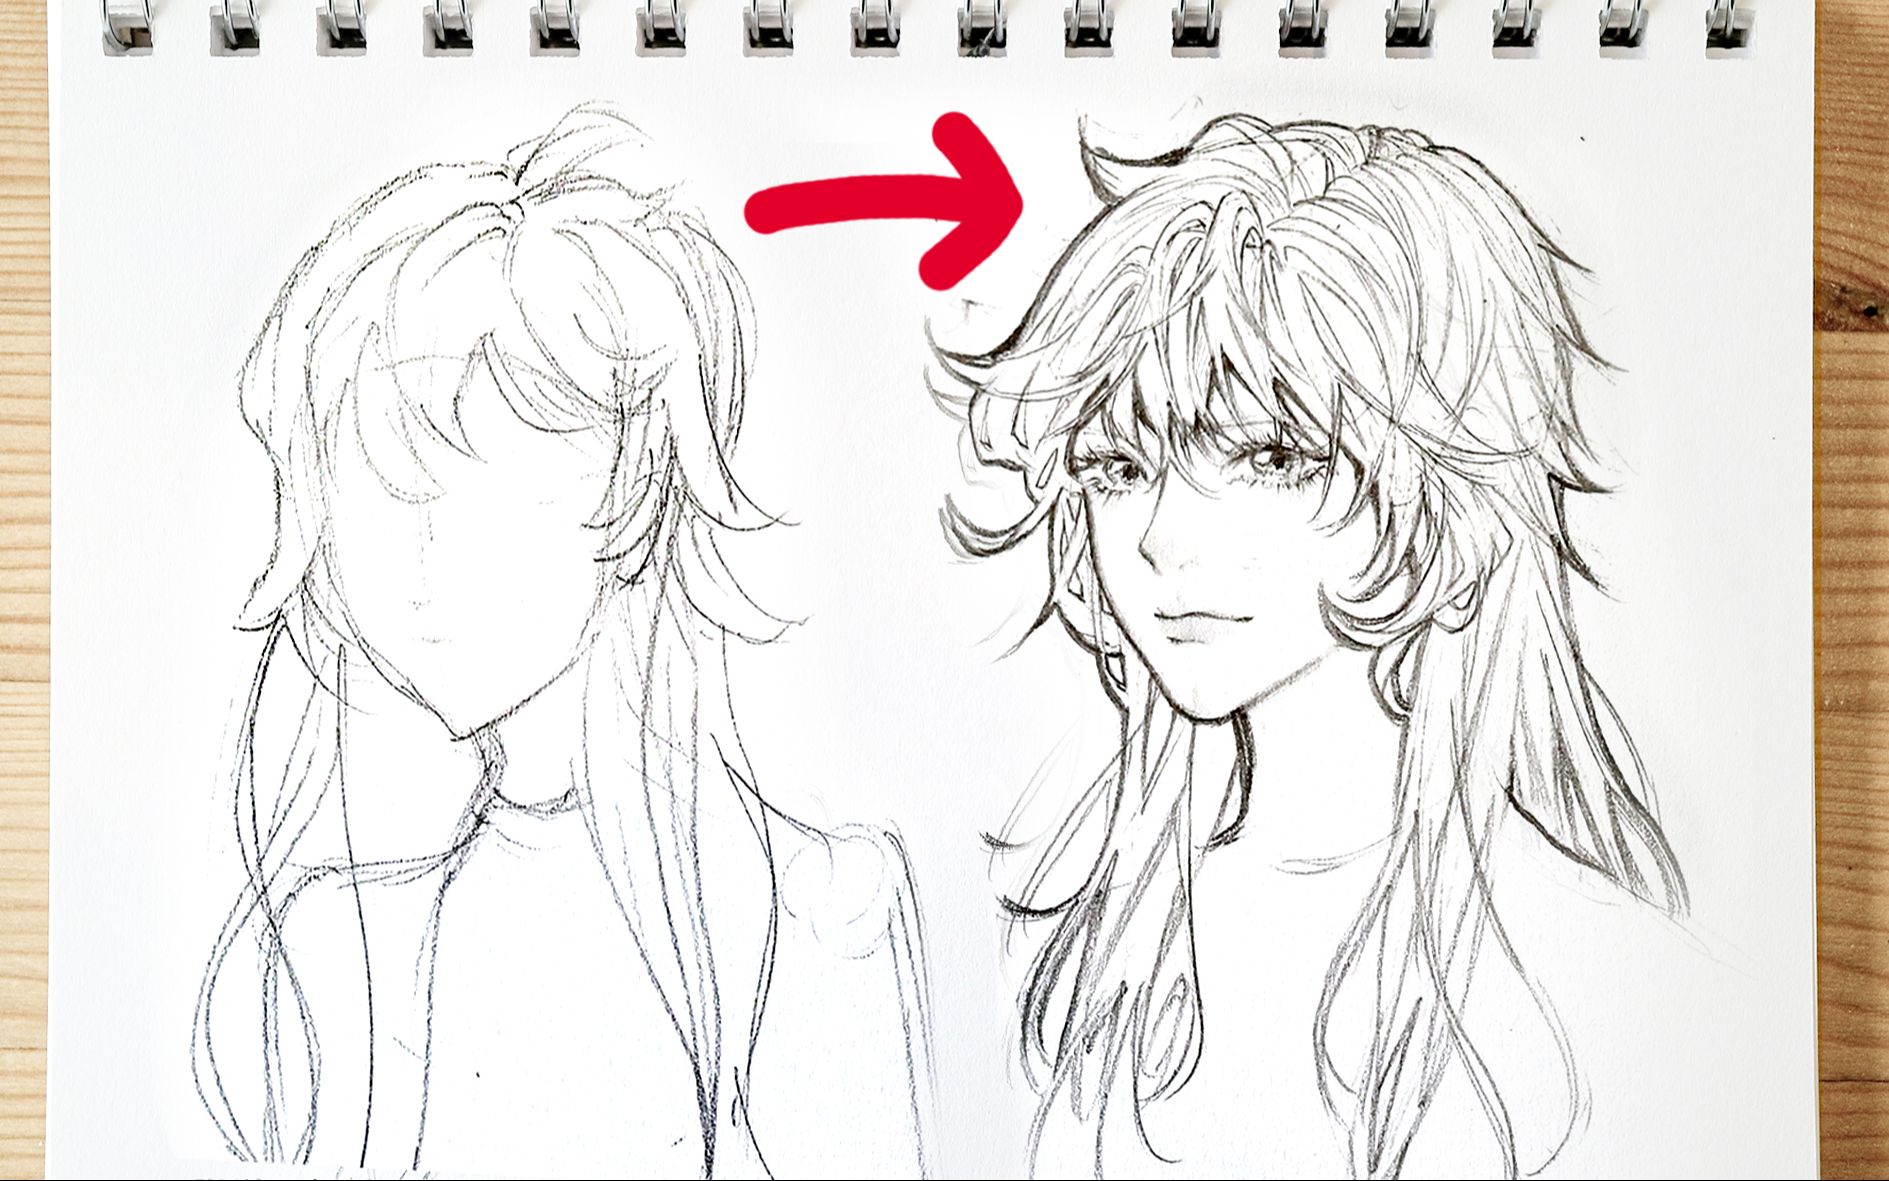 Học vẽ tóc anime - Tóc anime là một trong những yếu tố quan trọng tạo nên vẻ đẹp cho nhân vật. Nhưng làm sao để vẽ những đường tóc uốn lượn một cách chính xác và đẹp mắt? Khóa học Học vẽ tóc anime sẽ giúp bạn giải quyết vấn đề này một cách dễ dàng. Đăng ký ngay để tìm hiểu các kỹ thuật vẽ tóc và áp dụng vào các nhân vật anime của bạn nhé!